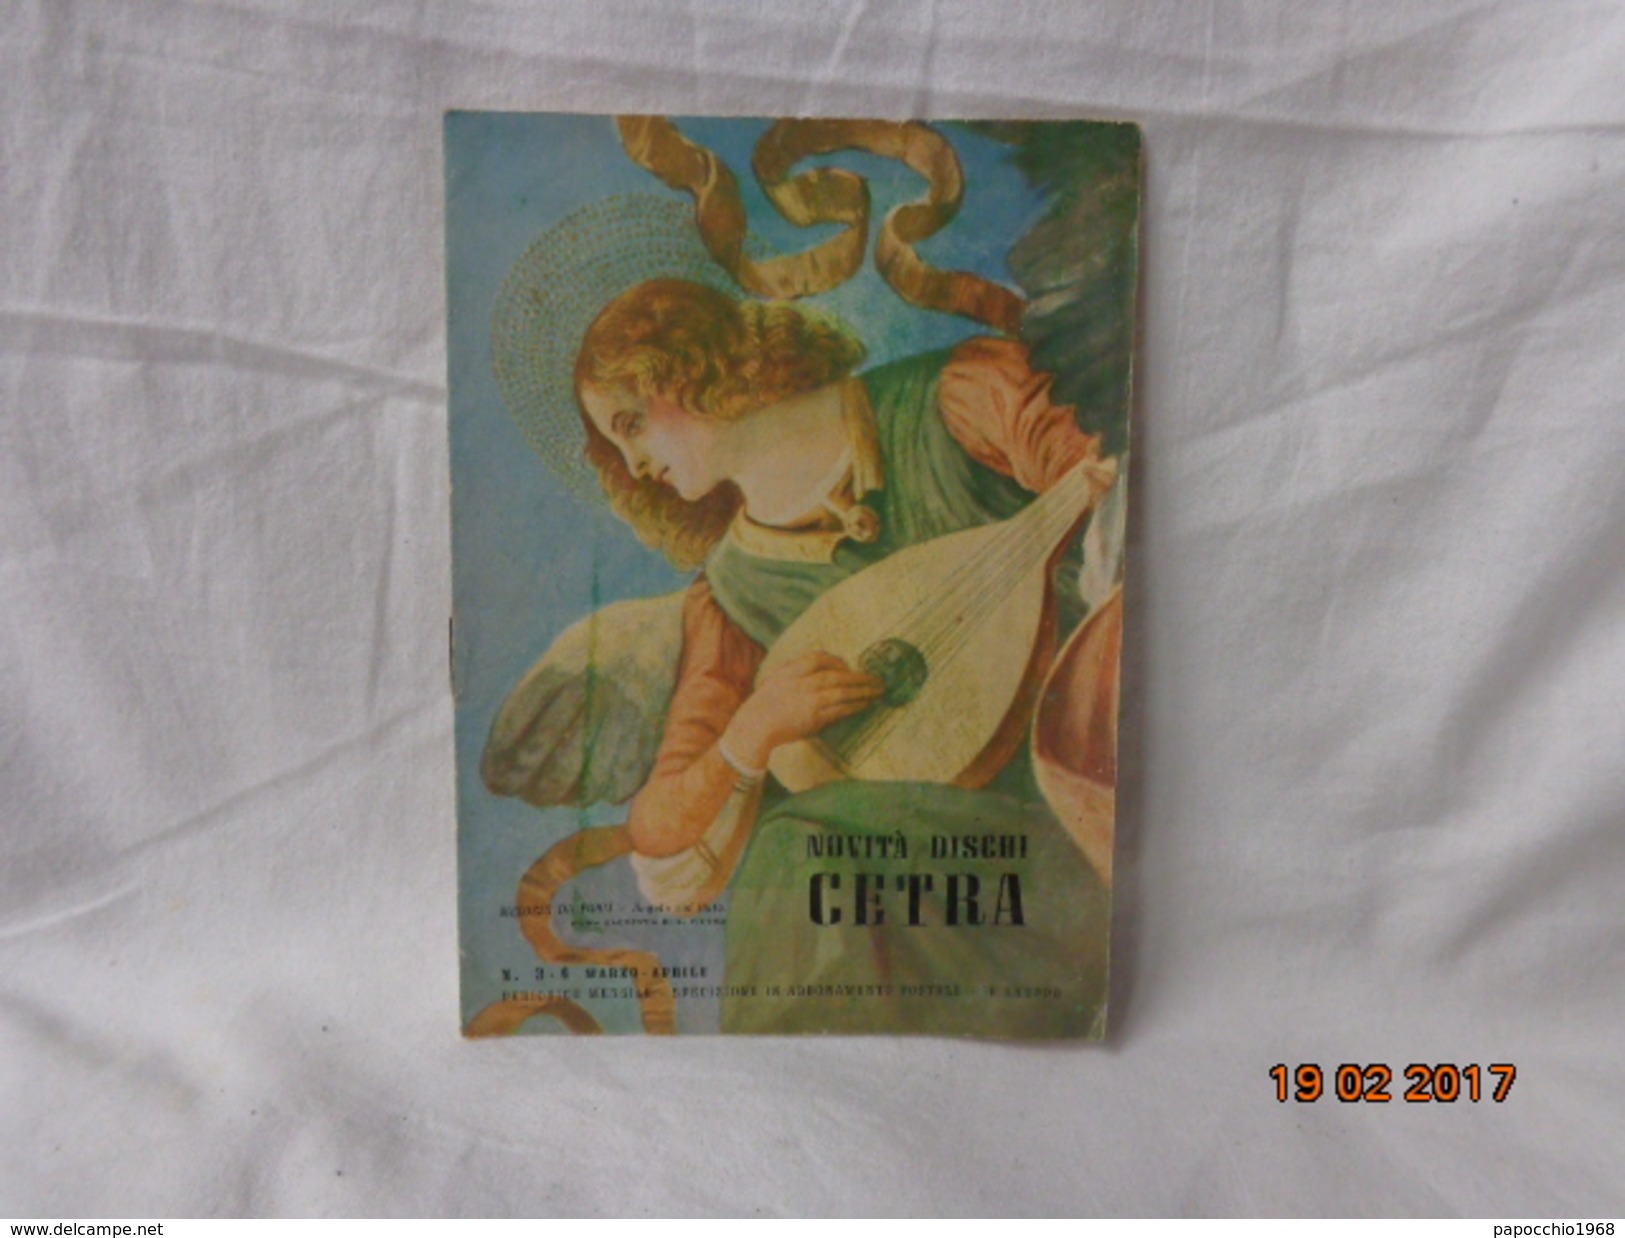 CATALOGO NOVITA' DISCHI CETRA EPOCA 1950 - Collections Complètes